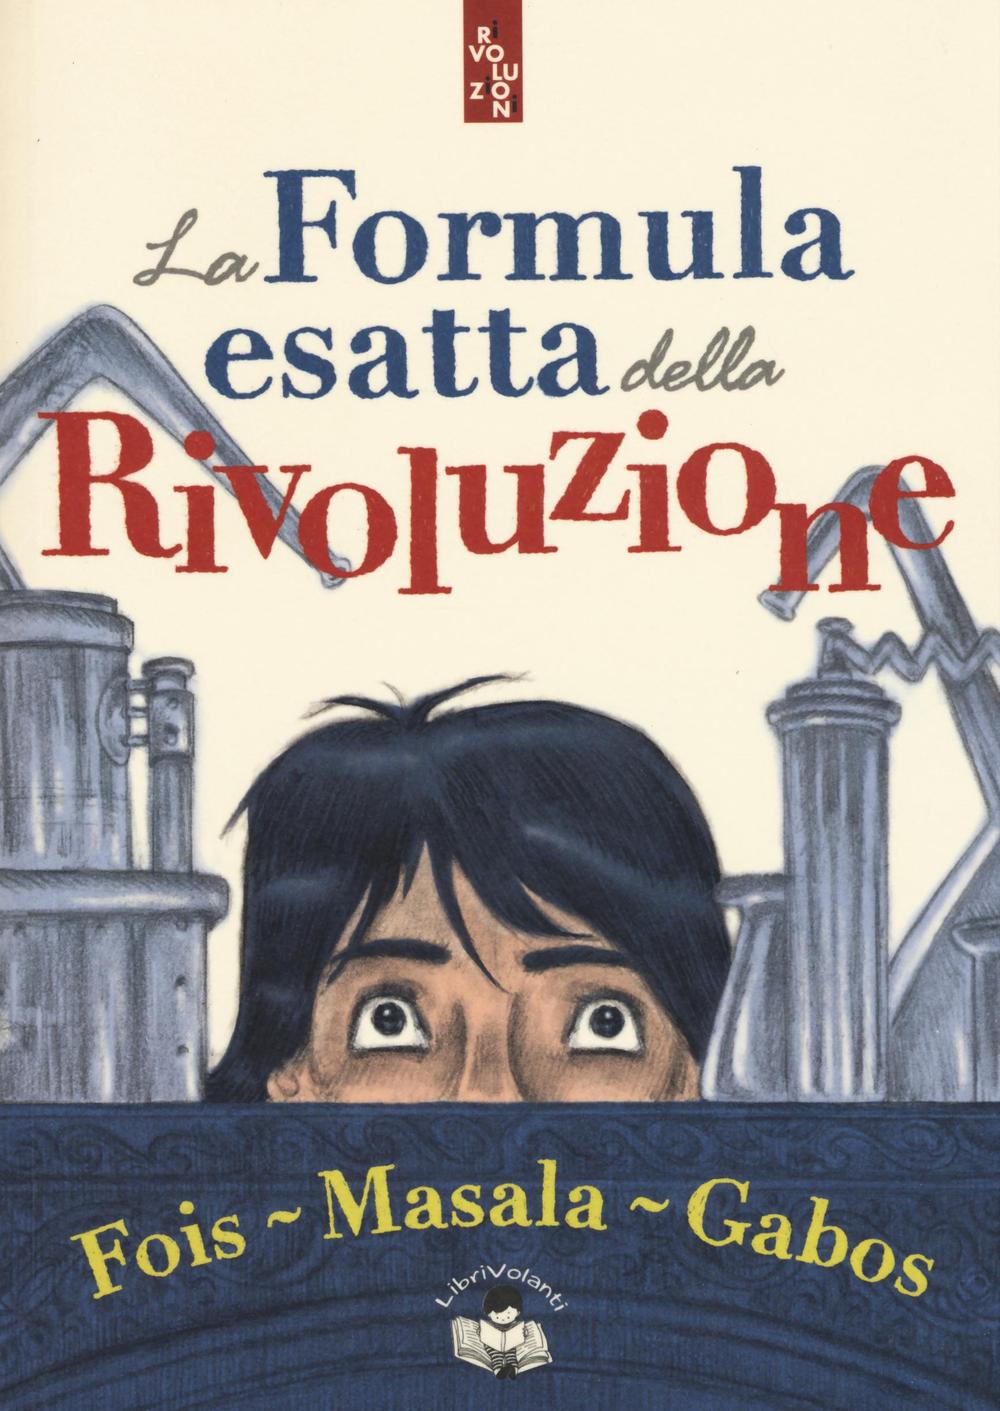 Carte La formula esatta della rivoluzione Marcello Fois